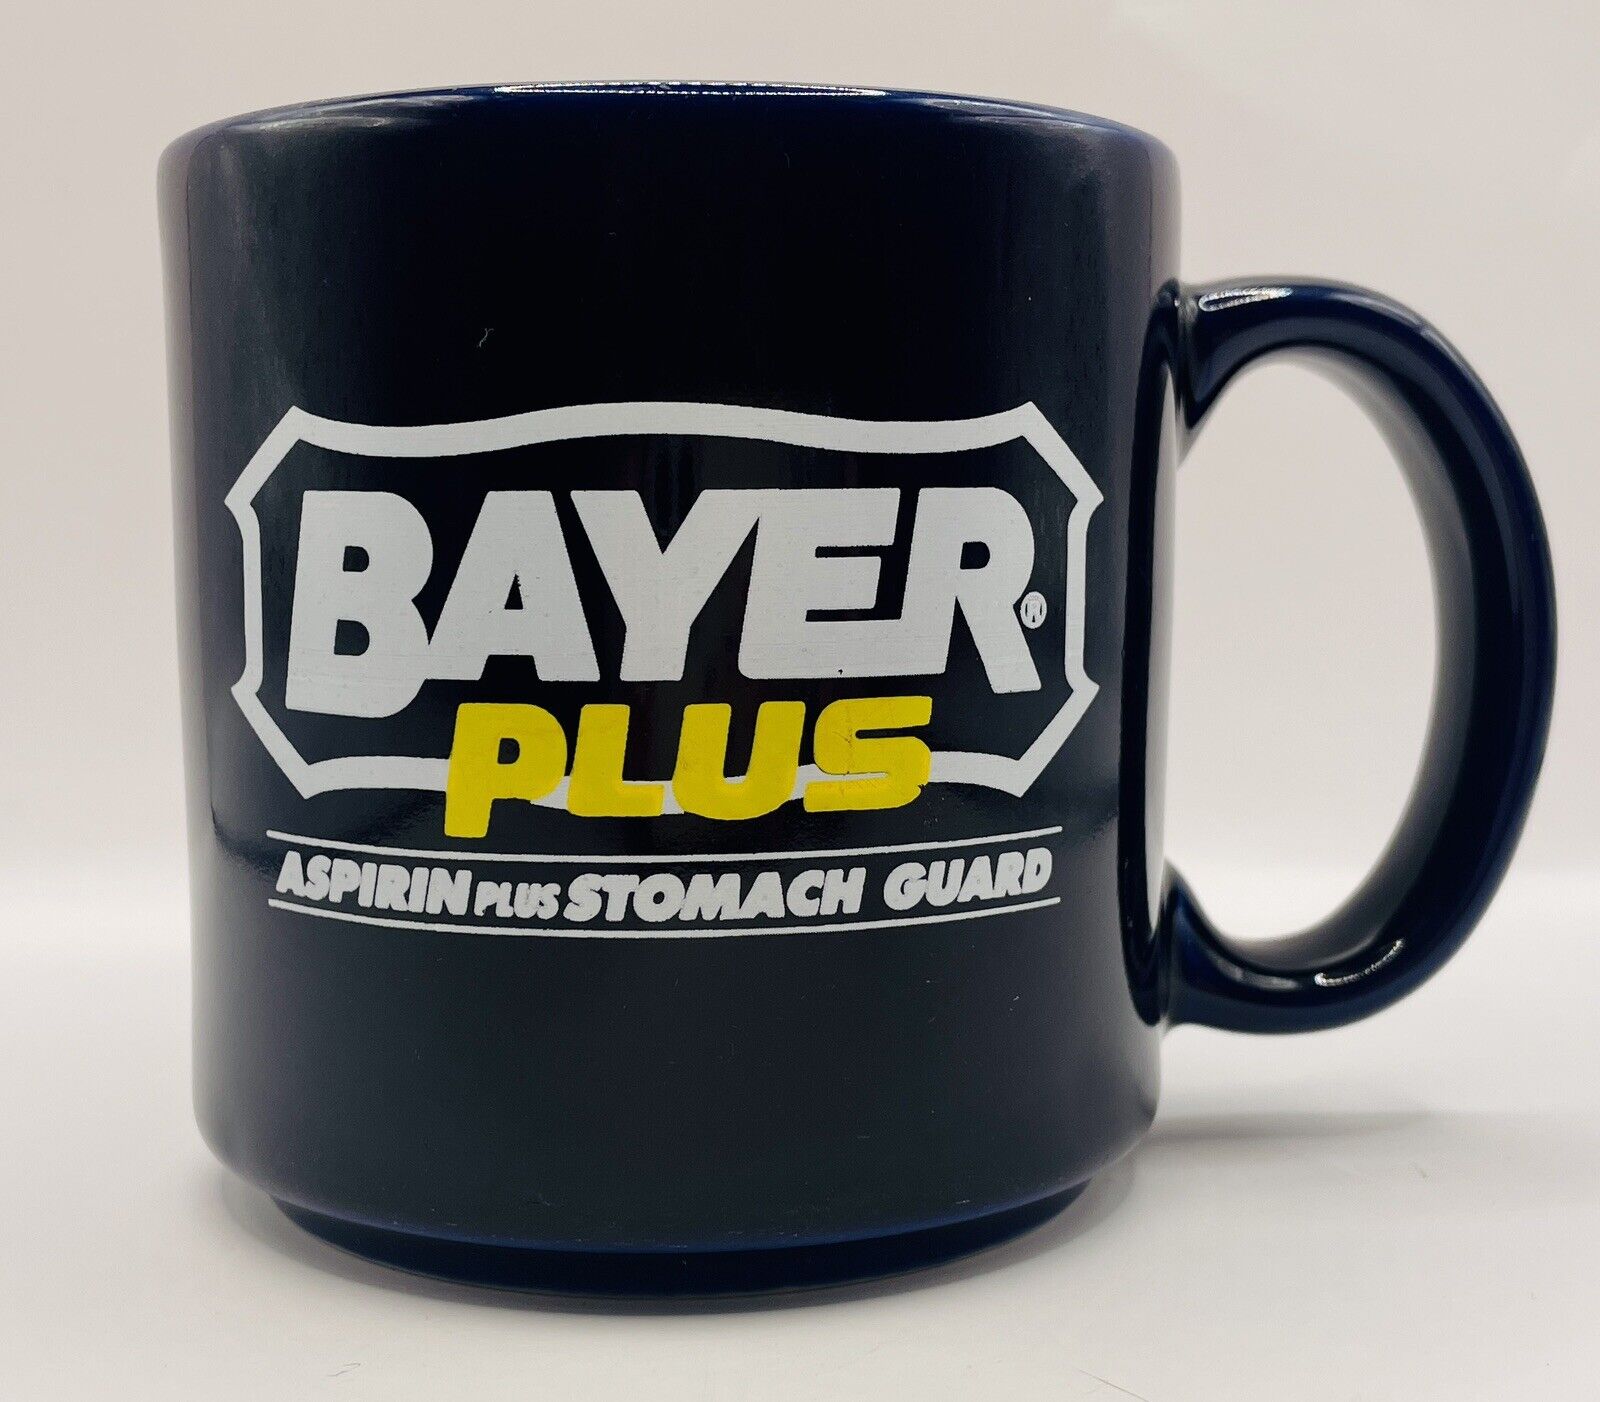 Bayer Plus Pharmaceutical Advertising Mug